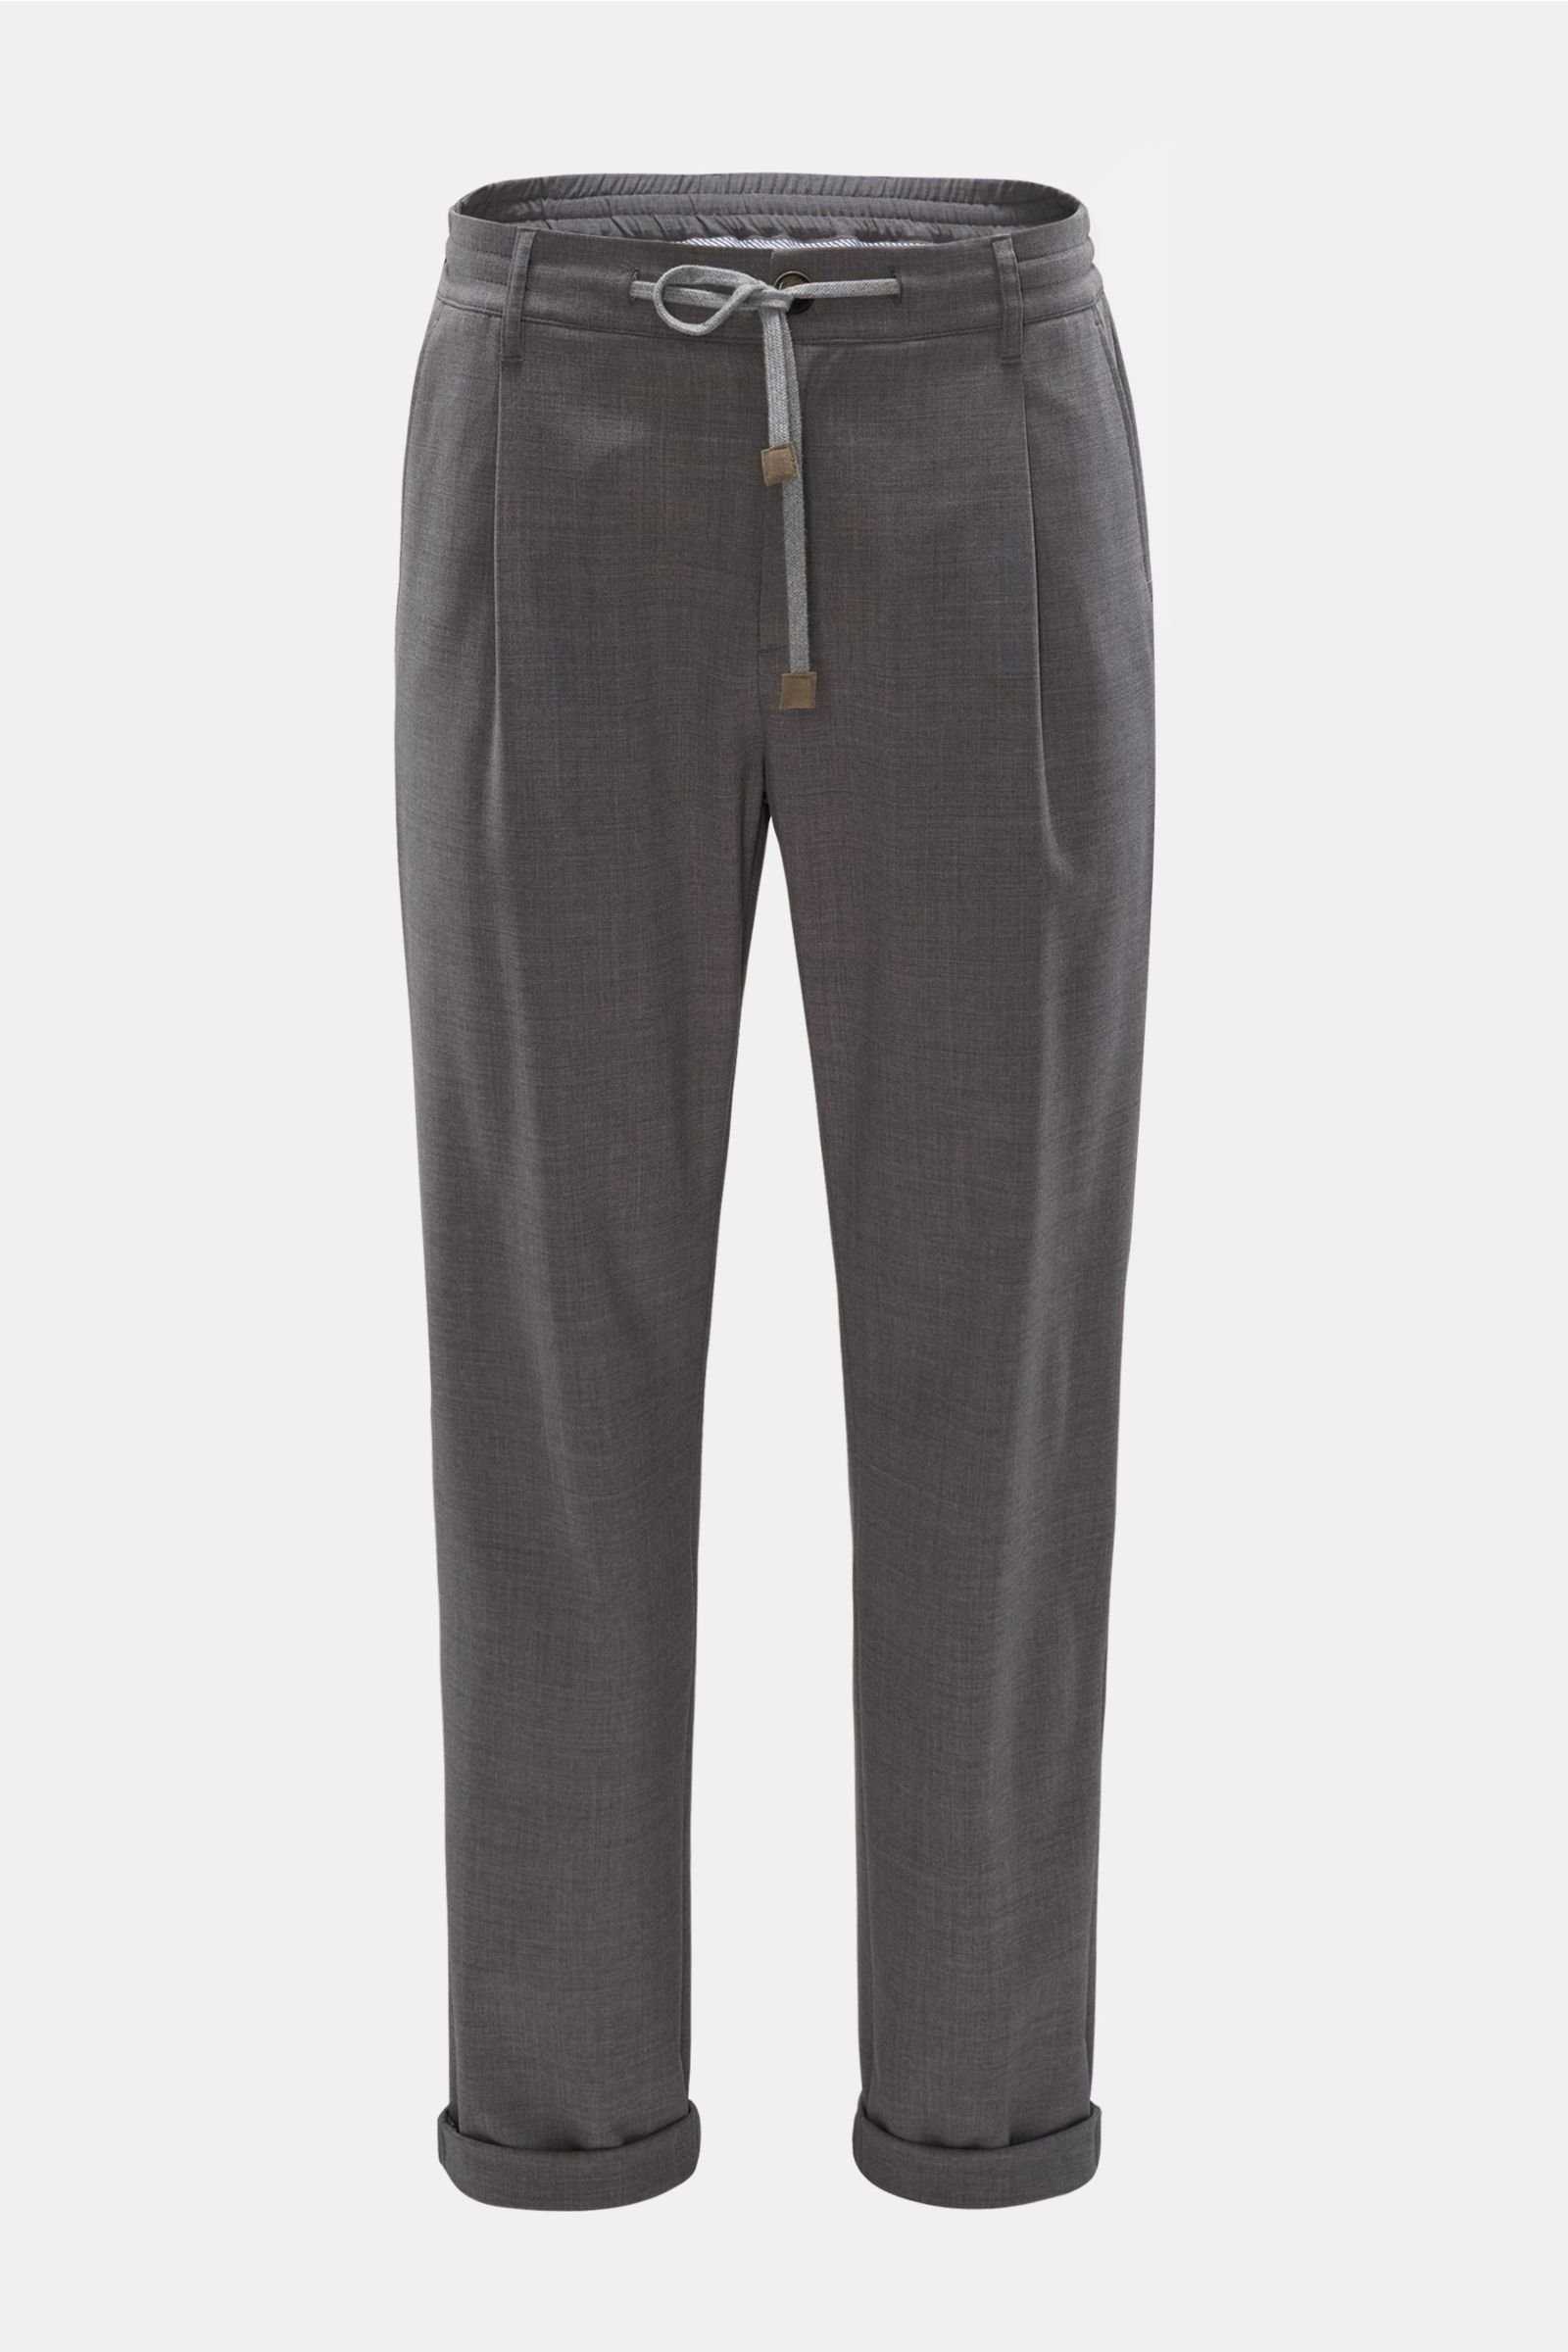 Wool jogger pants grey